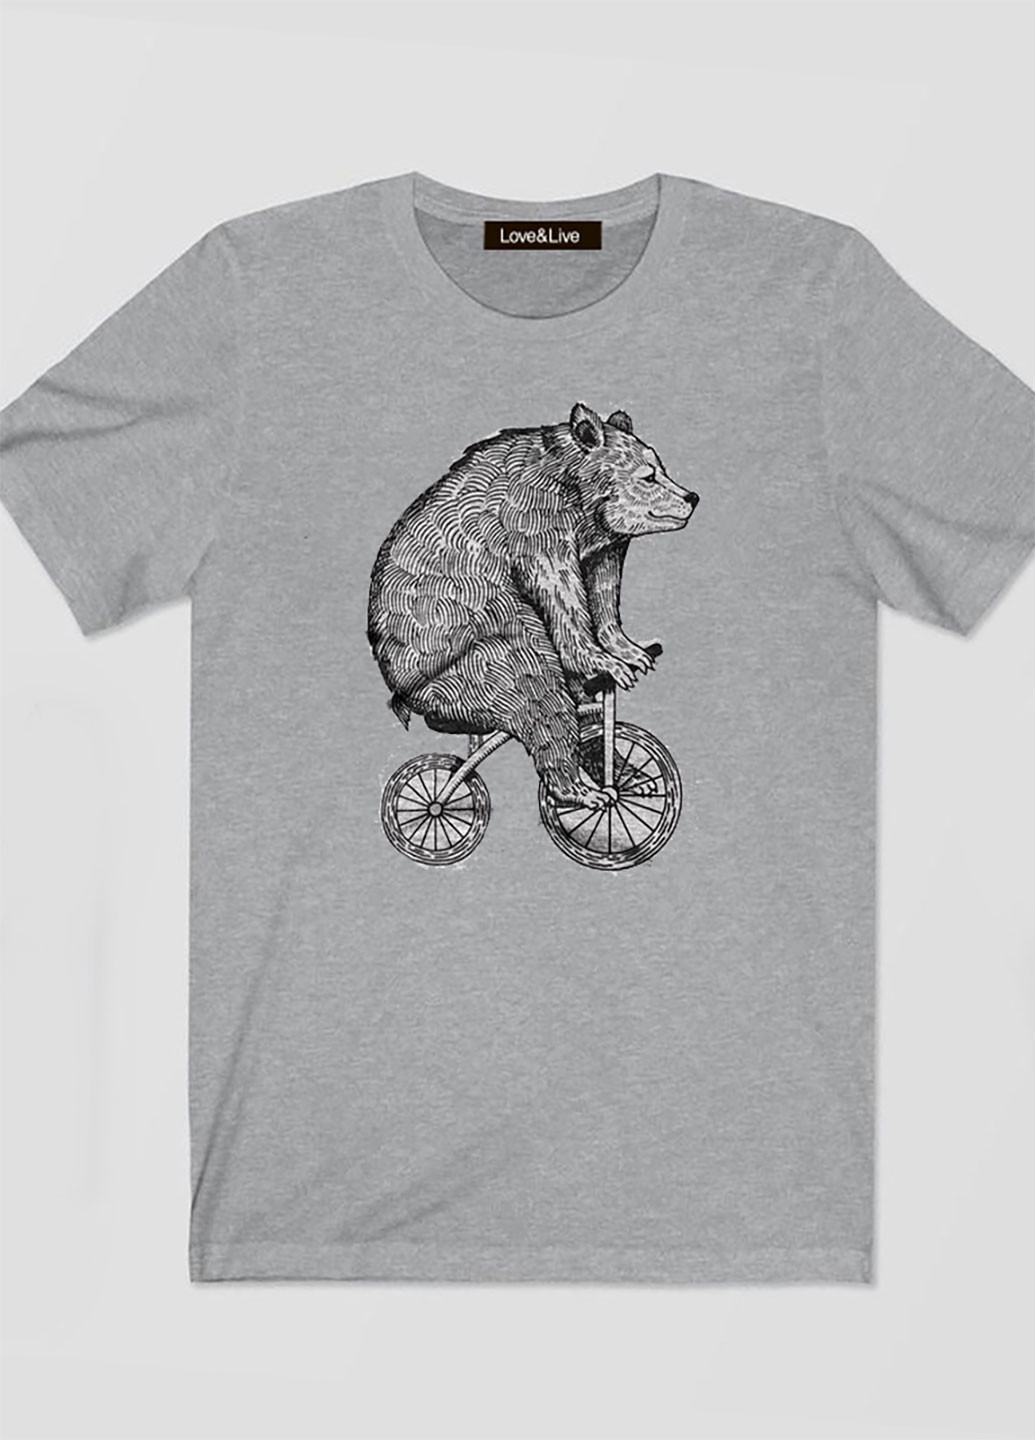 Сіра футболка чоловіча сіра мишка на велосипеді love & live Love&Live